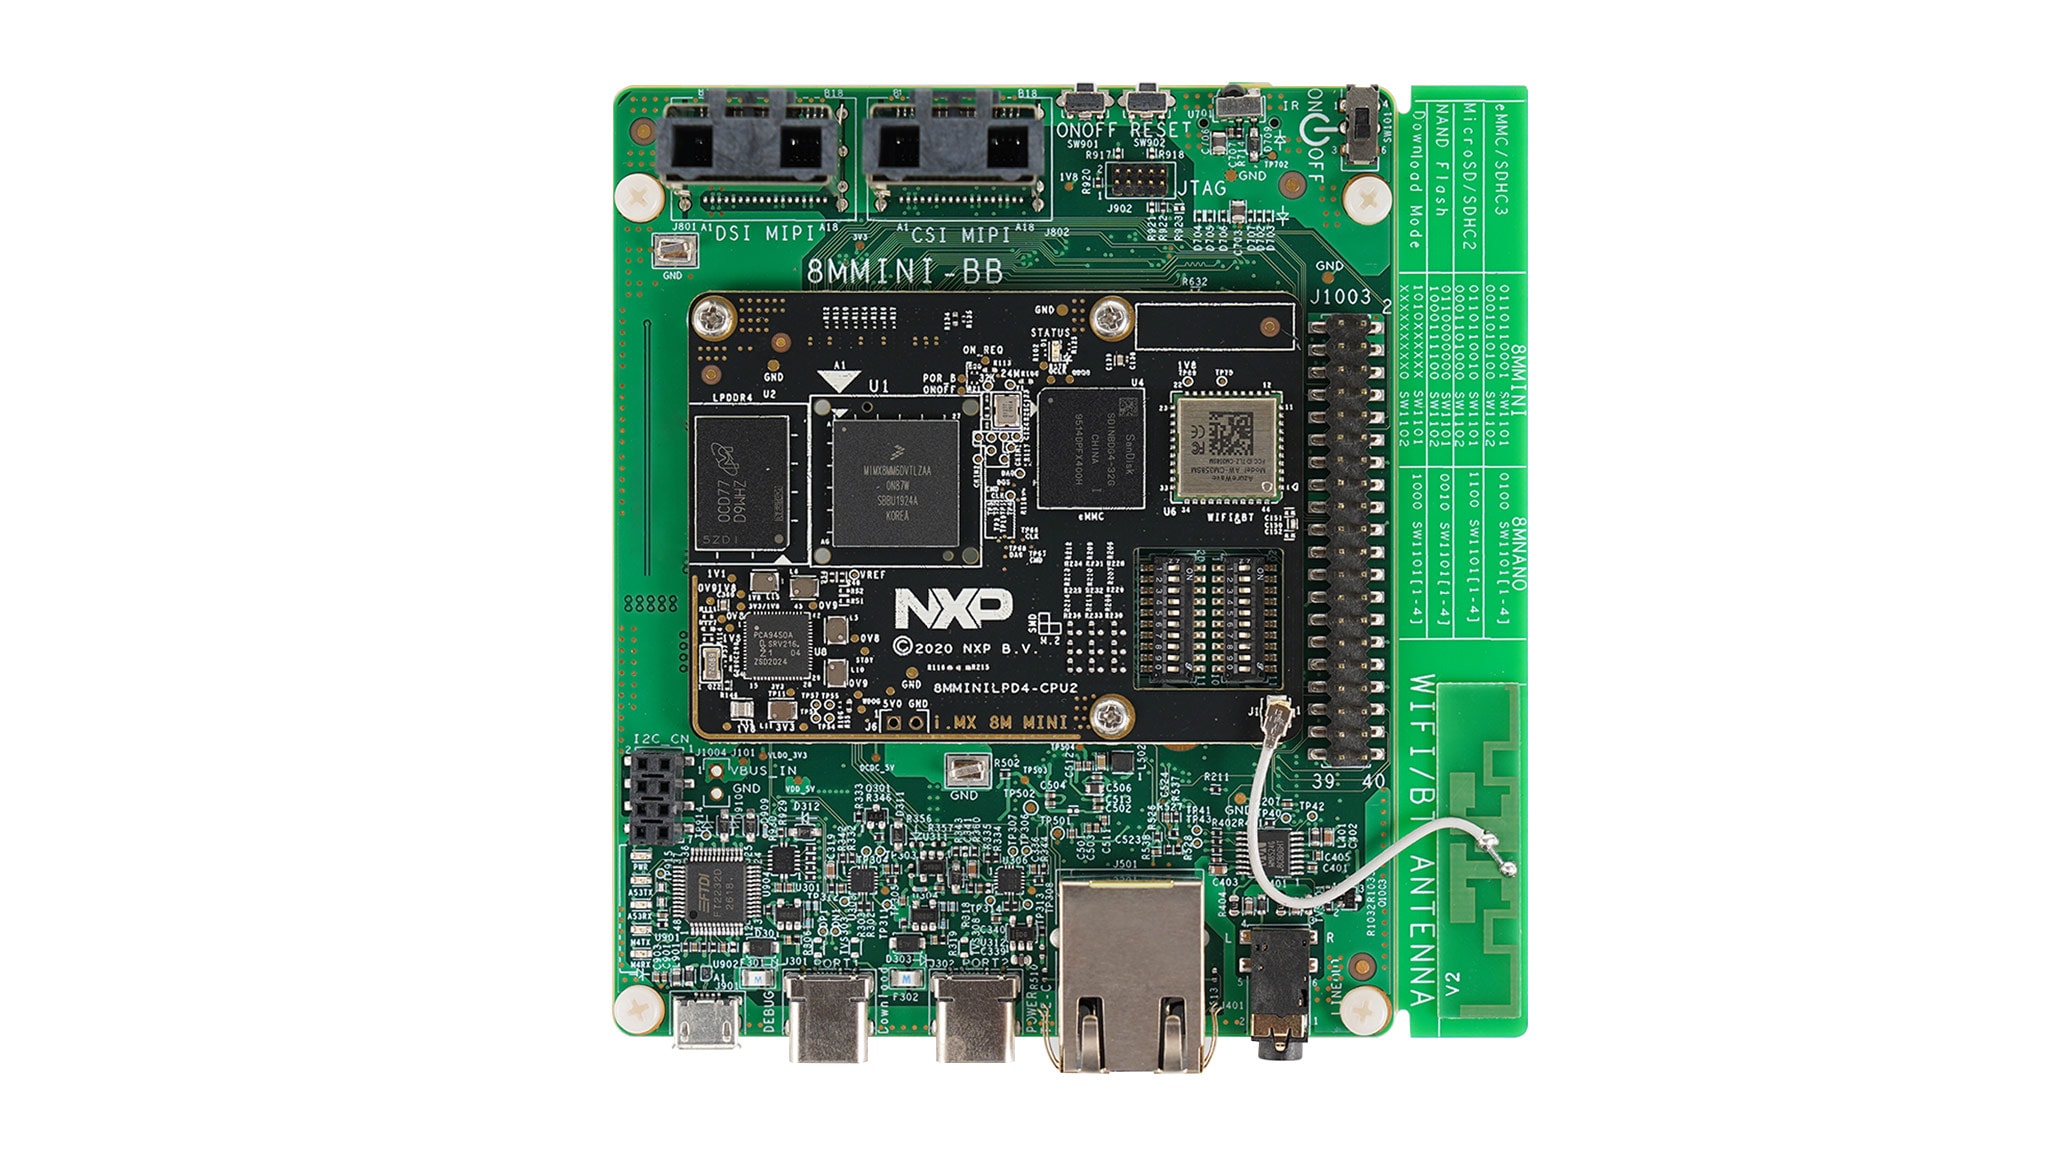 Khám phá bộ Kit Đánh giá NXP i.MX 8M Mini với các tính năng tuyệt vời và tiềm năng lớn của nó! Xem ảnh liên quan để biết thêm thông tin chi tiết về bộ Kit này và làm thế nào nó có thể giúp bạn trong việc phát triển sản phẩm của bạn.